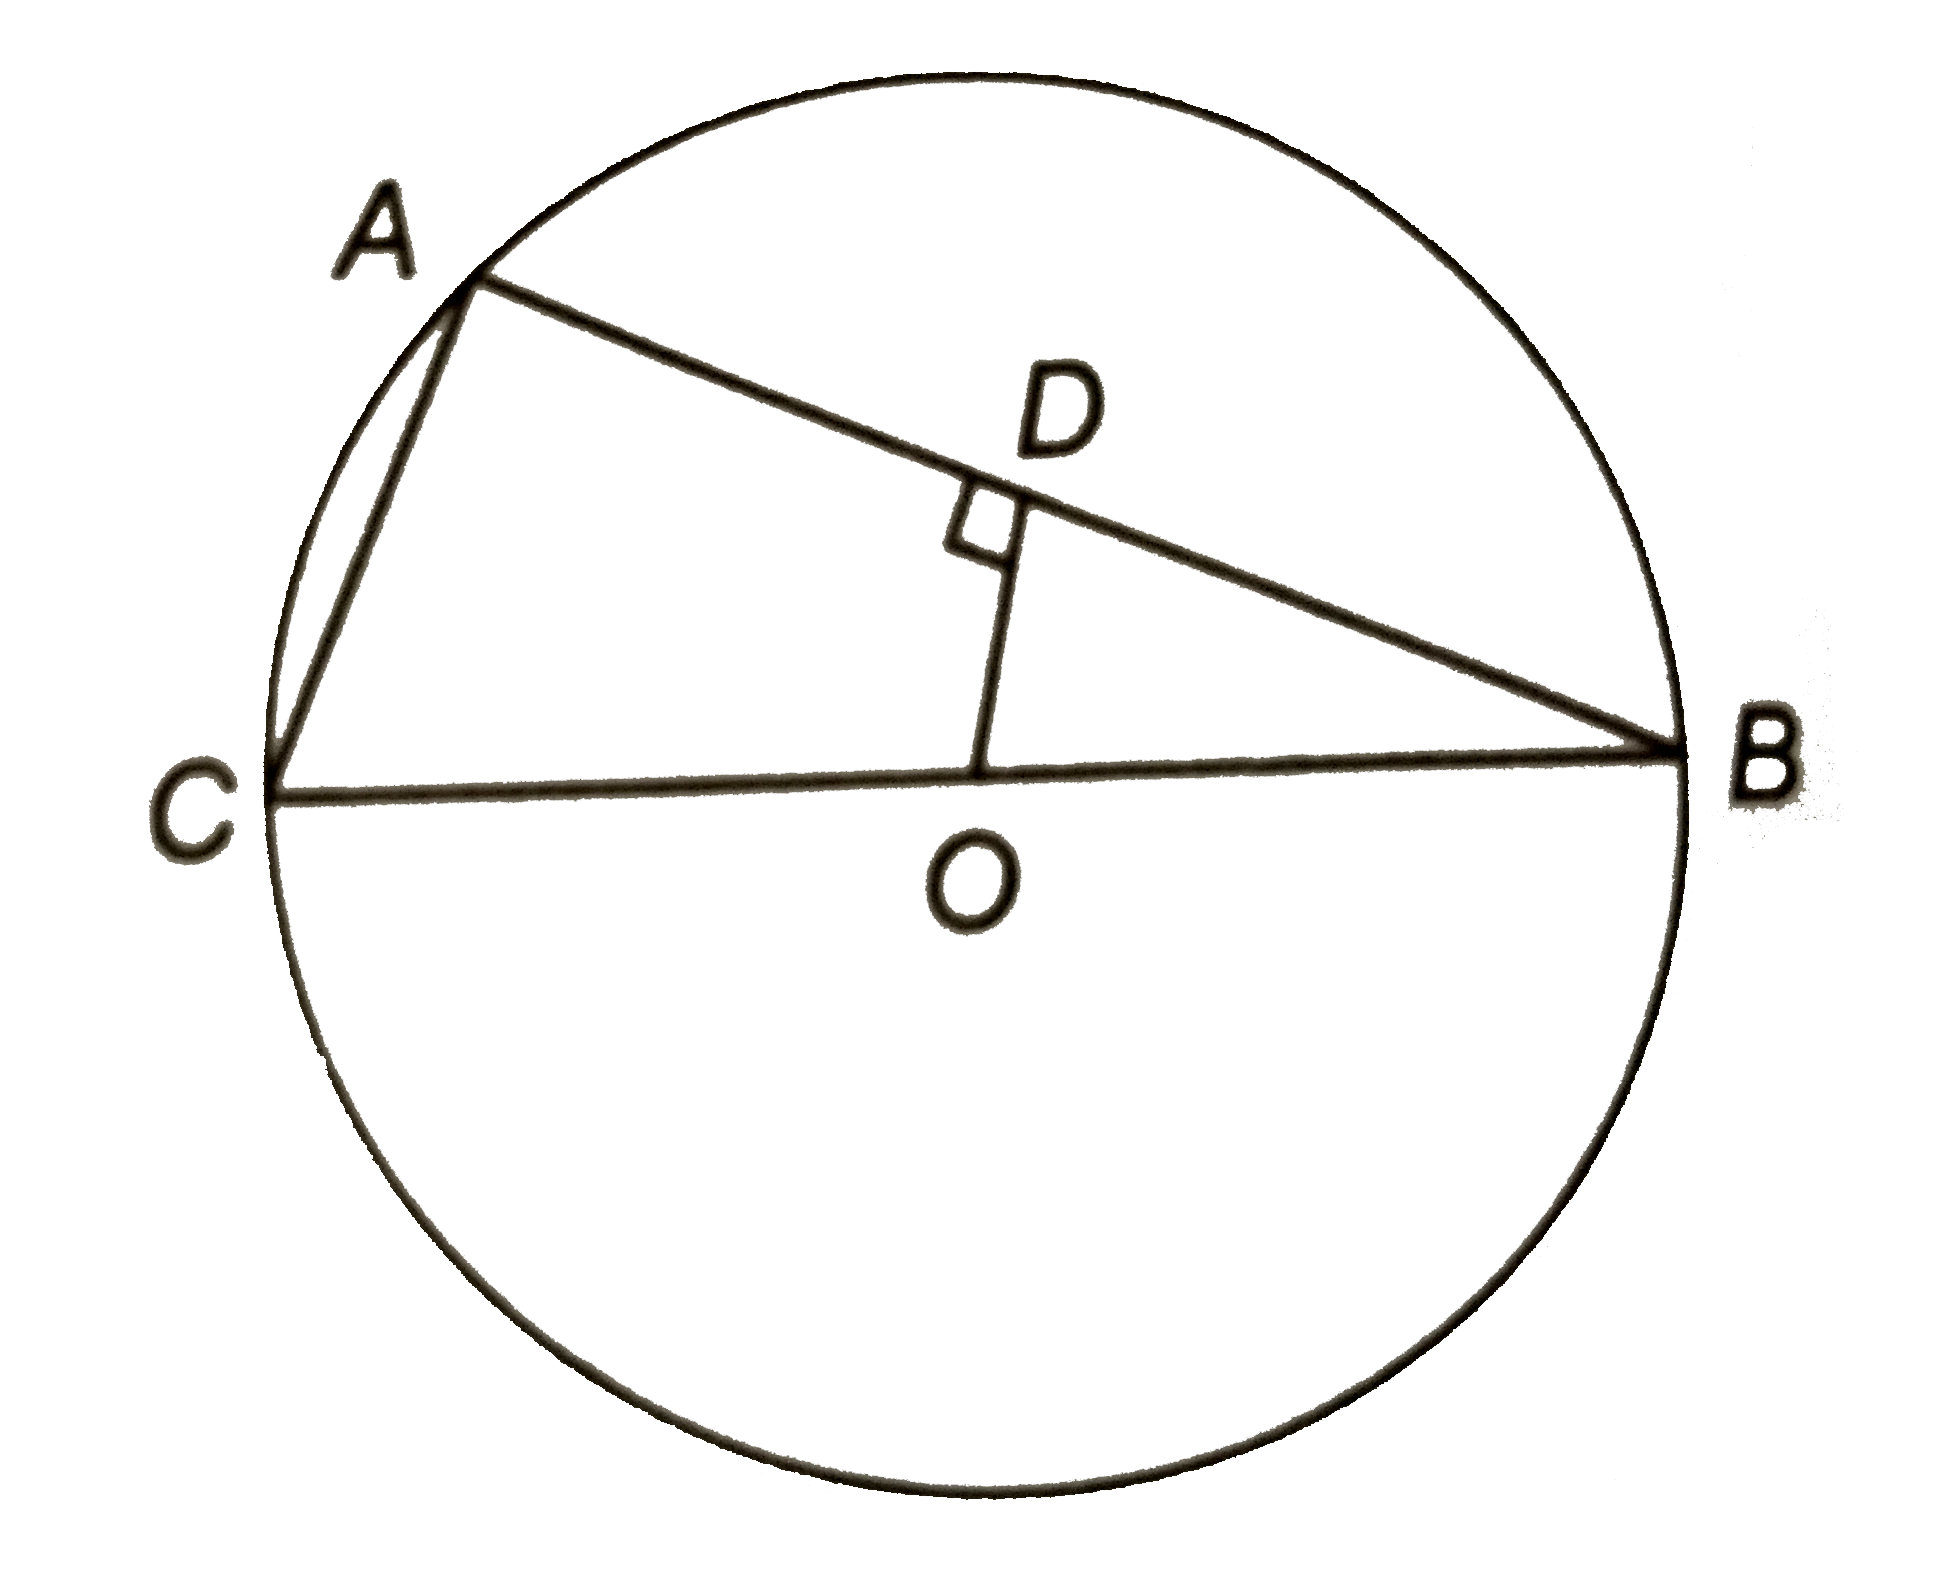 चित्र में, वृत्त कि एक जीवा AB पर लम्ब OD है जहाँ O वृत्त का केन्द्र है | यदि BC एक व्यास है, तो सिद्ध कीजिए कि CA=2OD.